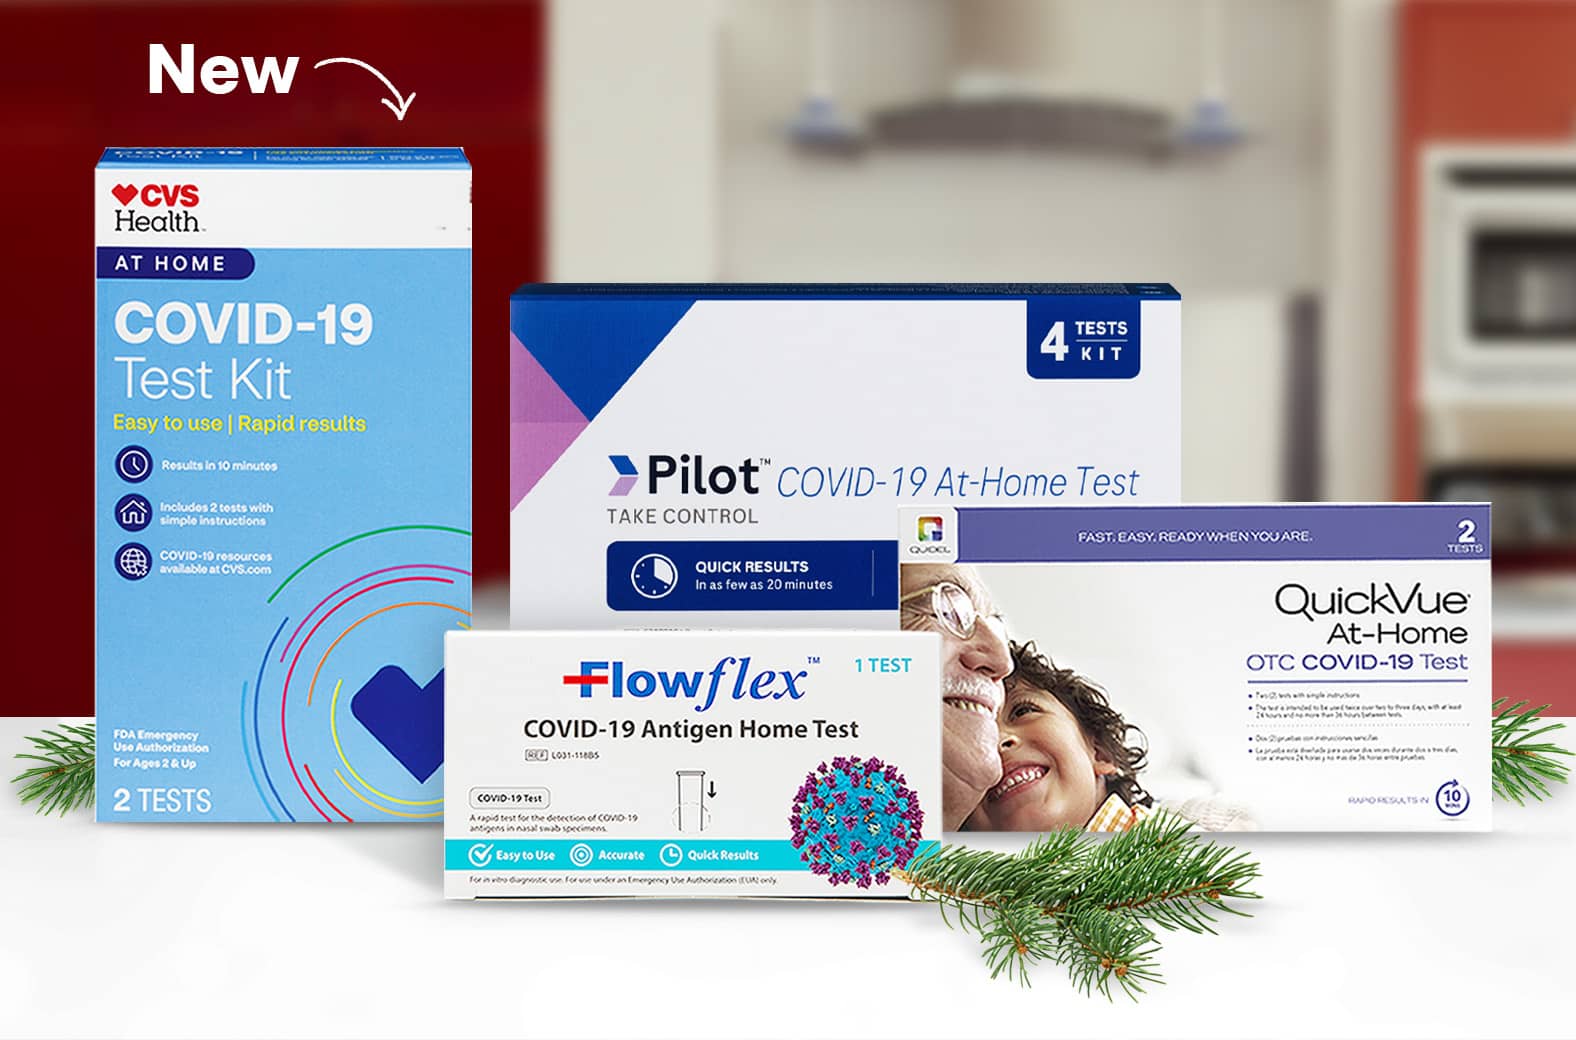 Nuevo Kit de prueba de COVID-19 CVS Health, con kits de prueba de COVID-19 para hacerse en casa de Pilot, Flowflex, BinaxNow